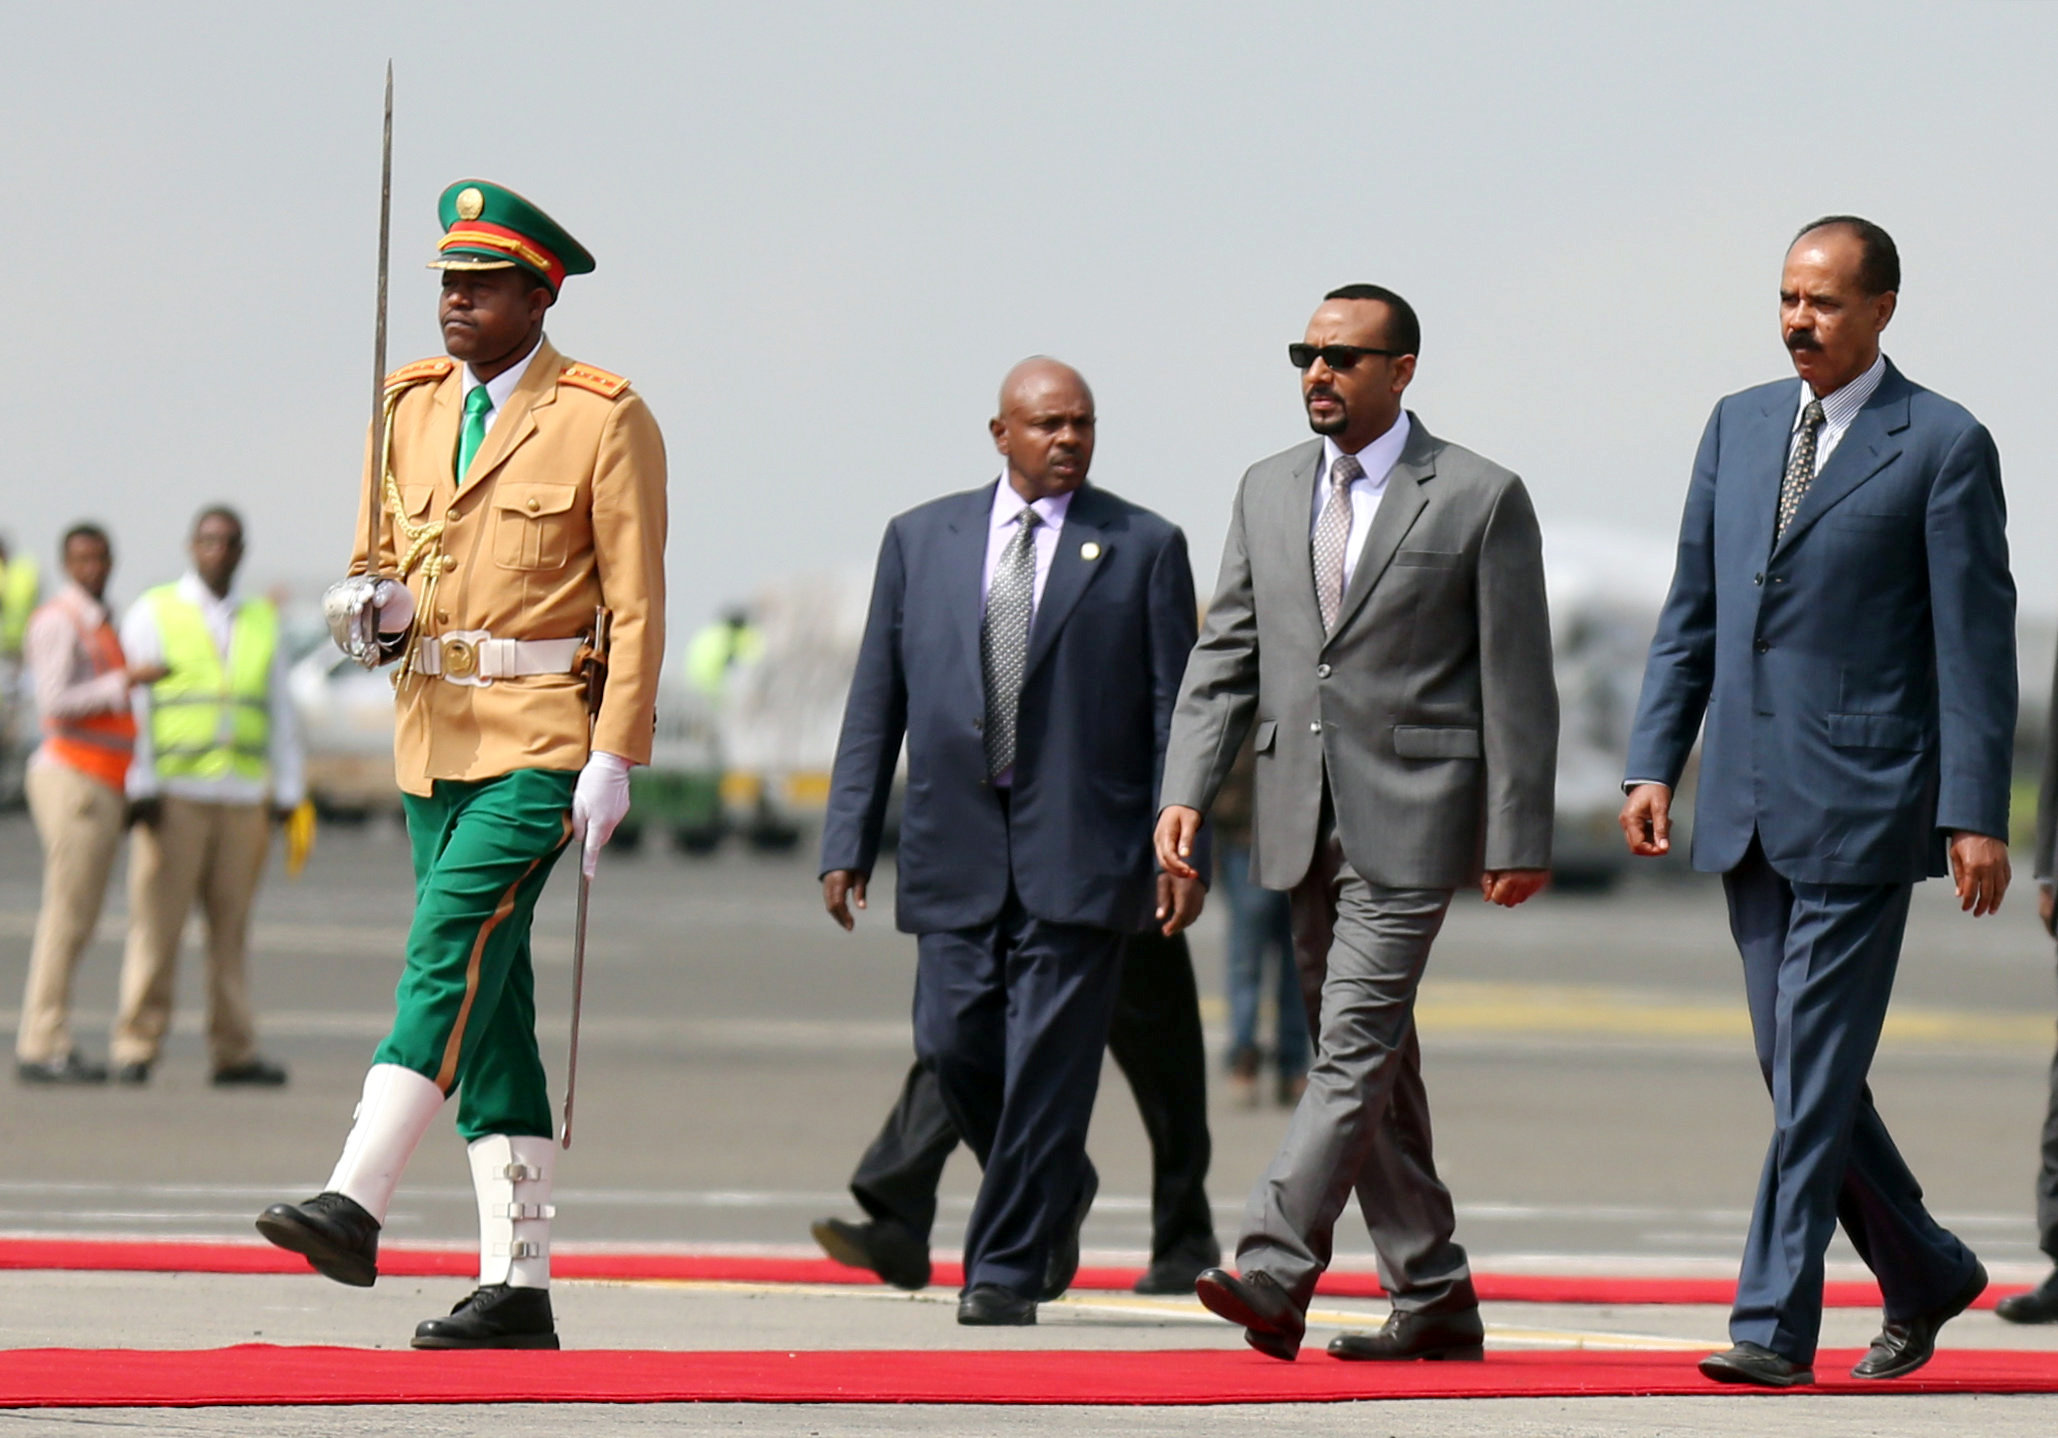 رئيس الوزراء الإثيوبي أبي أحمد يستقبل الرئيس الإيريتيري إسياس أفورقي. تيكسا نيجيري- رويترز